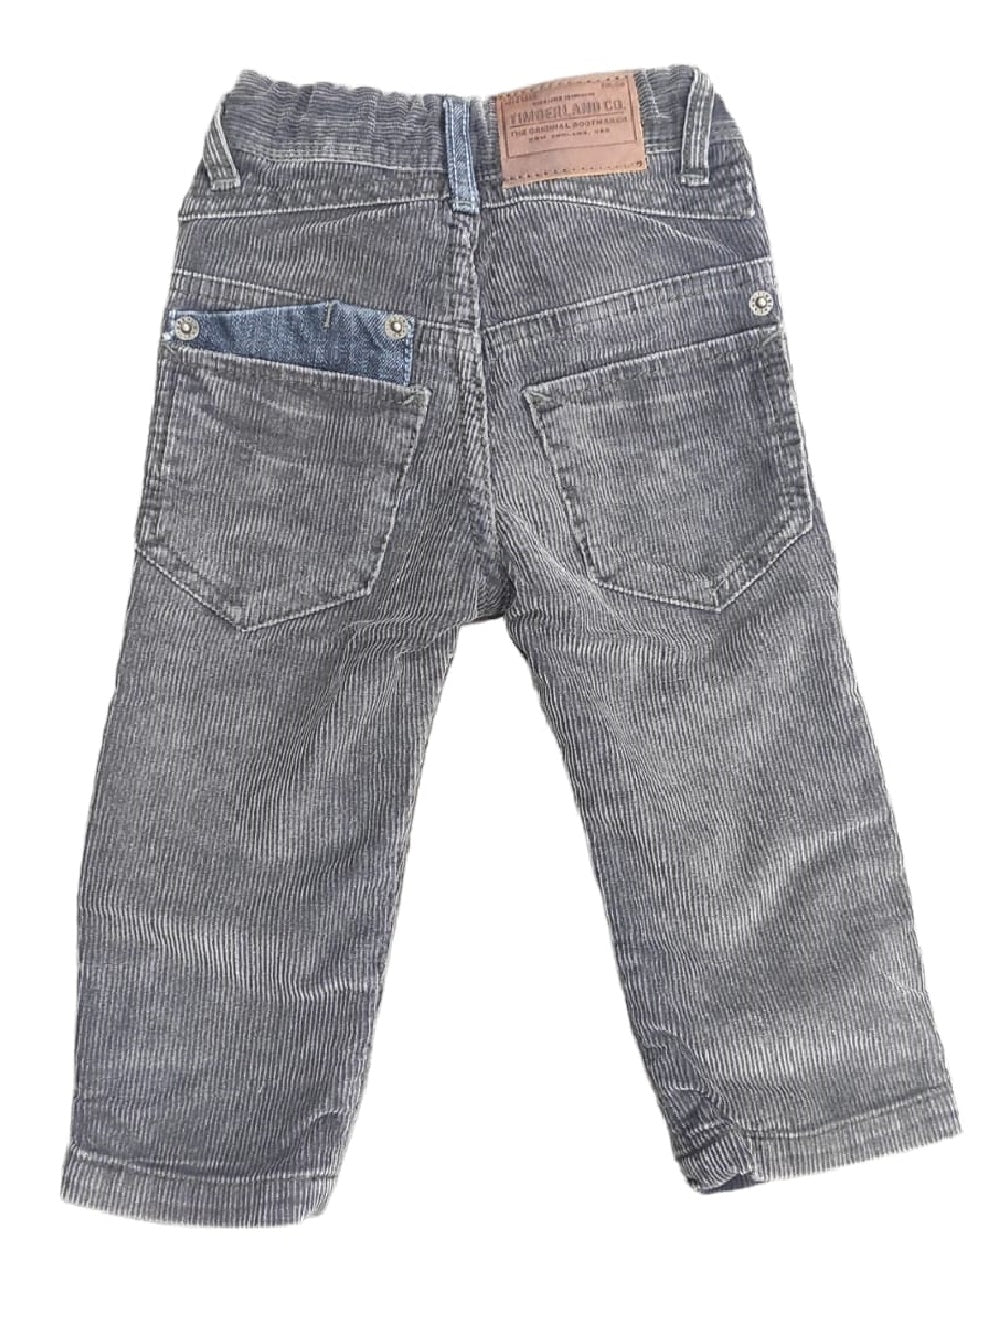 Pantalone Timberland realizzato in cotone con la vita  a regolazione elasticizzata